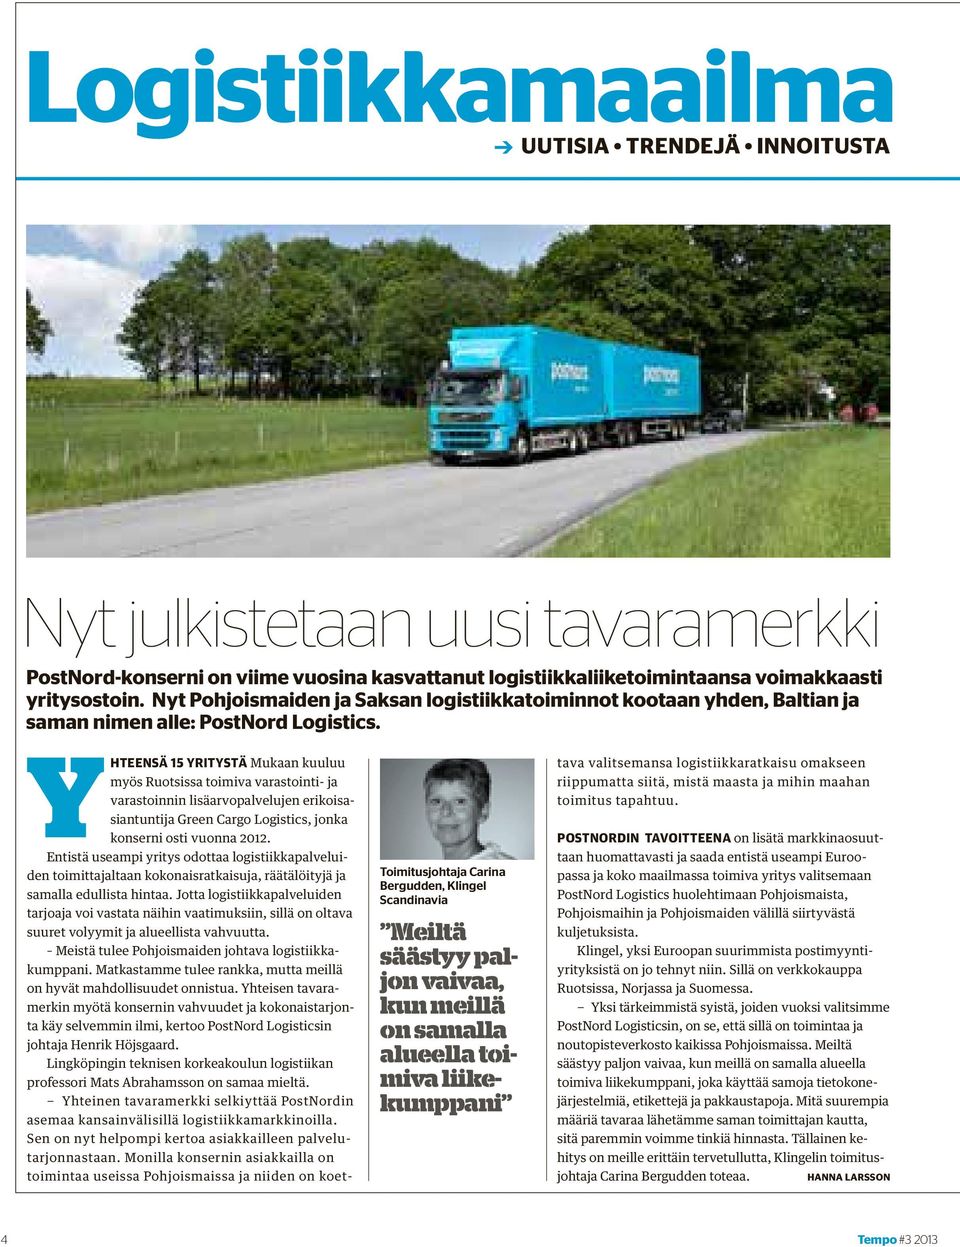 YHTEENSÄ 15 YRITYSTÄ Mukaan kuuluu myös Ruotsissa toimiva varastointi- ja varastoinnin lisäarvopalvelujen erikoisasiantuntija Green Cargo Logistics, jonka konserni osti vuonna 2012.